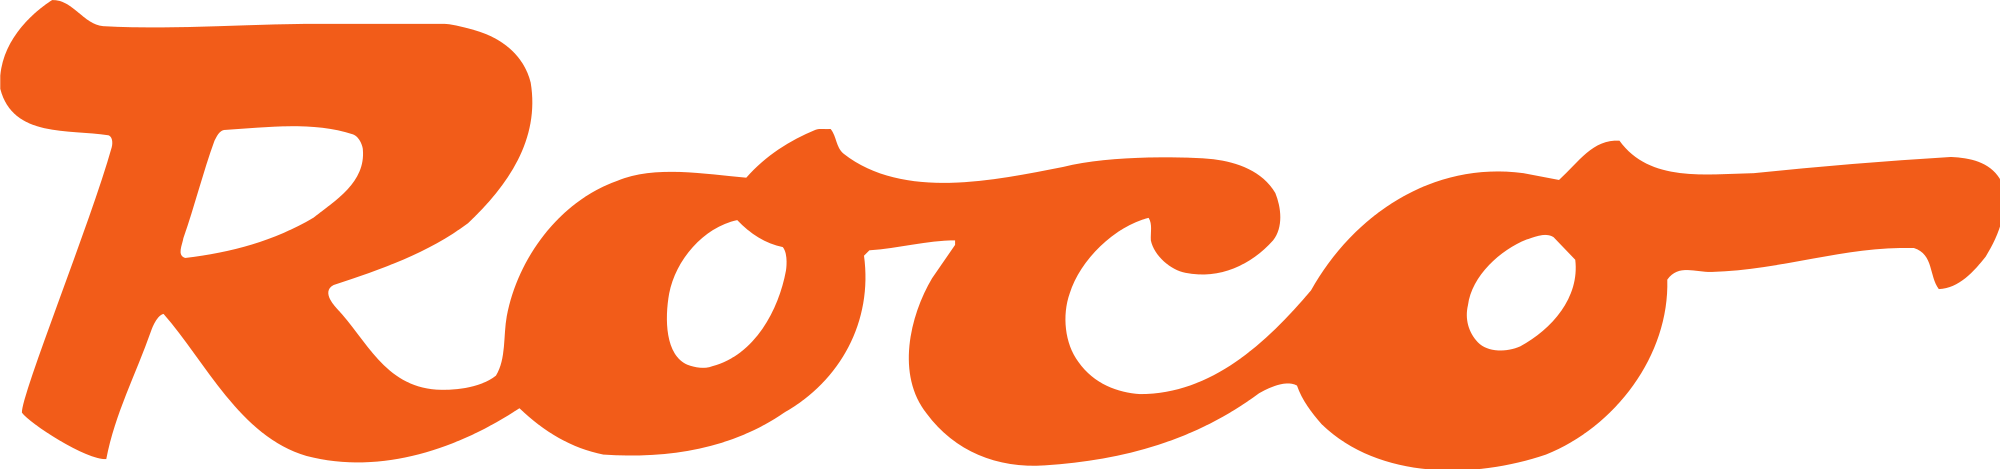 Image Result For Minitank Logo Roco - Accessories - Oiler 20 Ml--roco-fleischmann (2000x469)